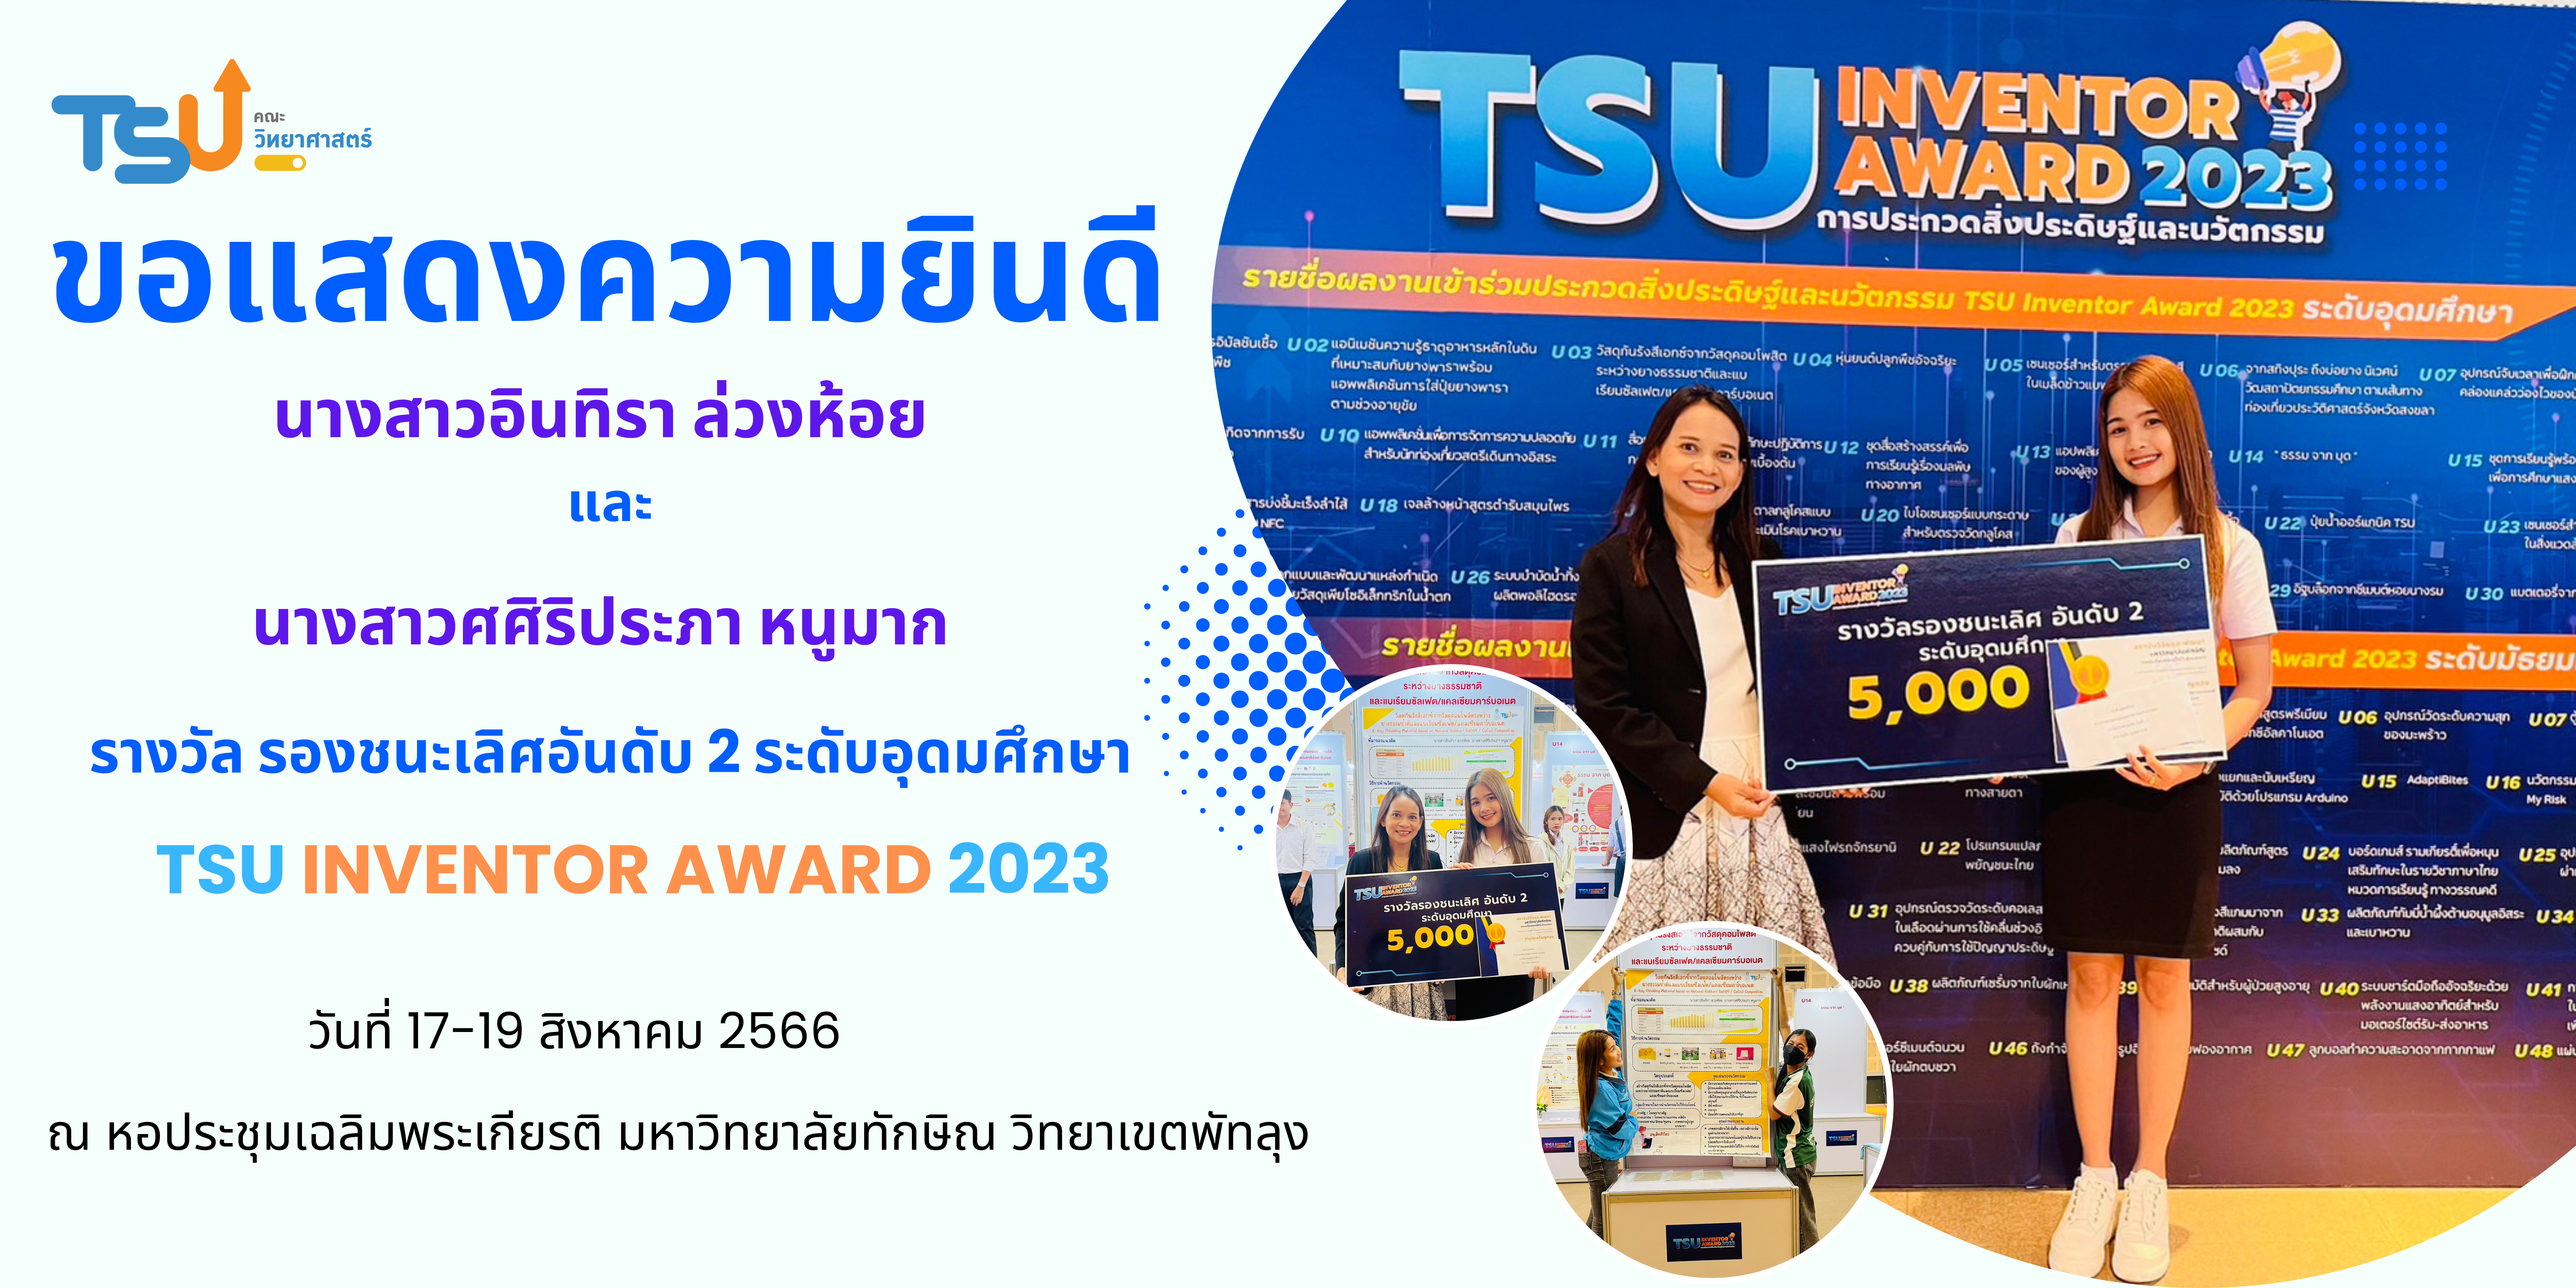 congratulate TSU inventer 2023